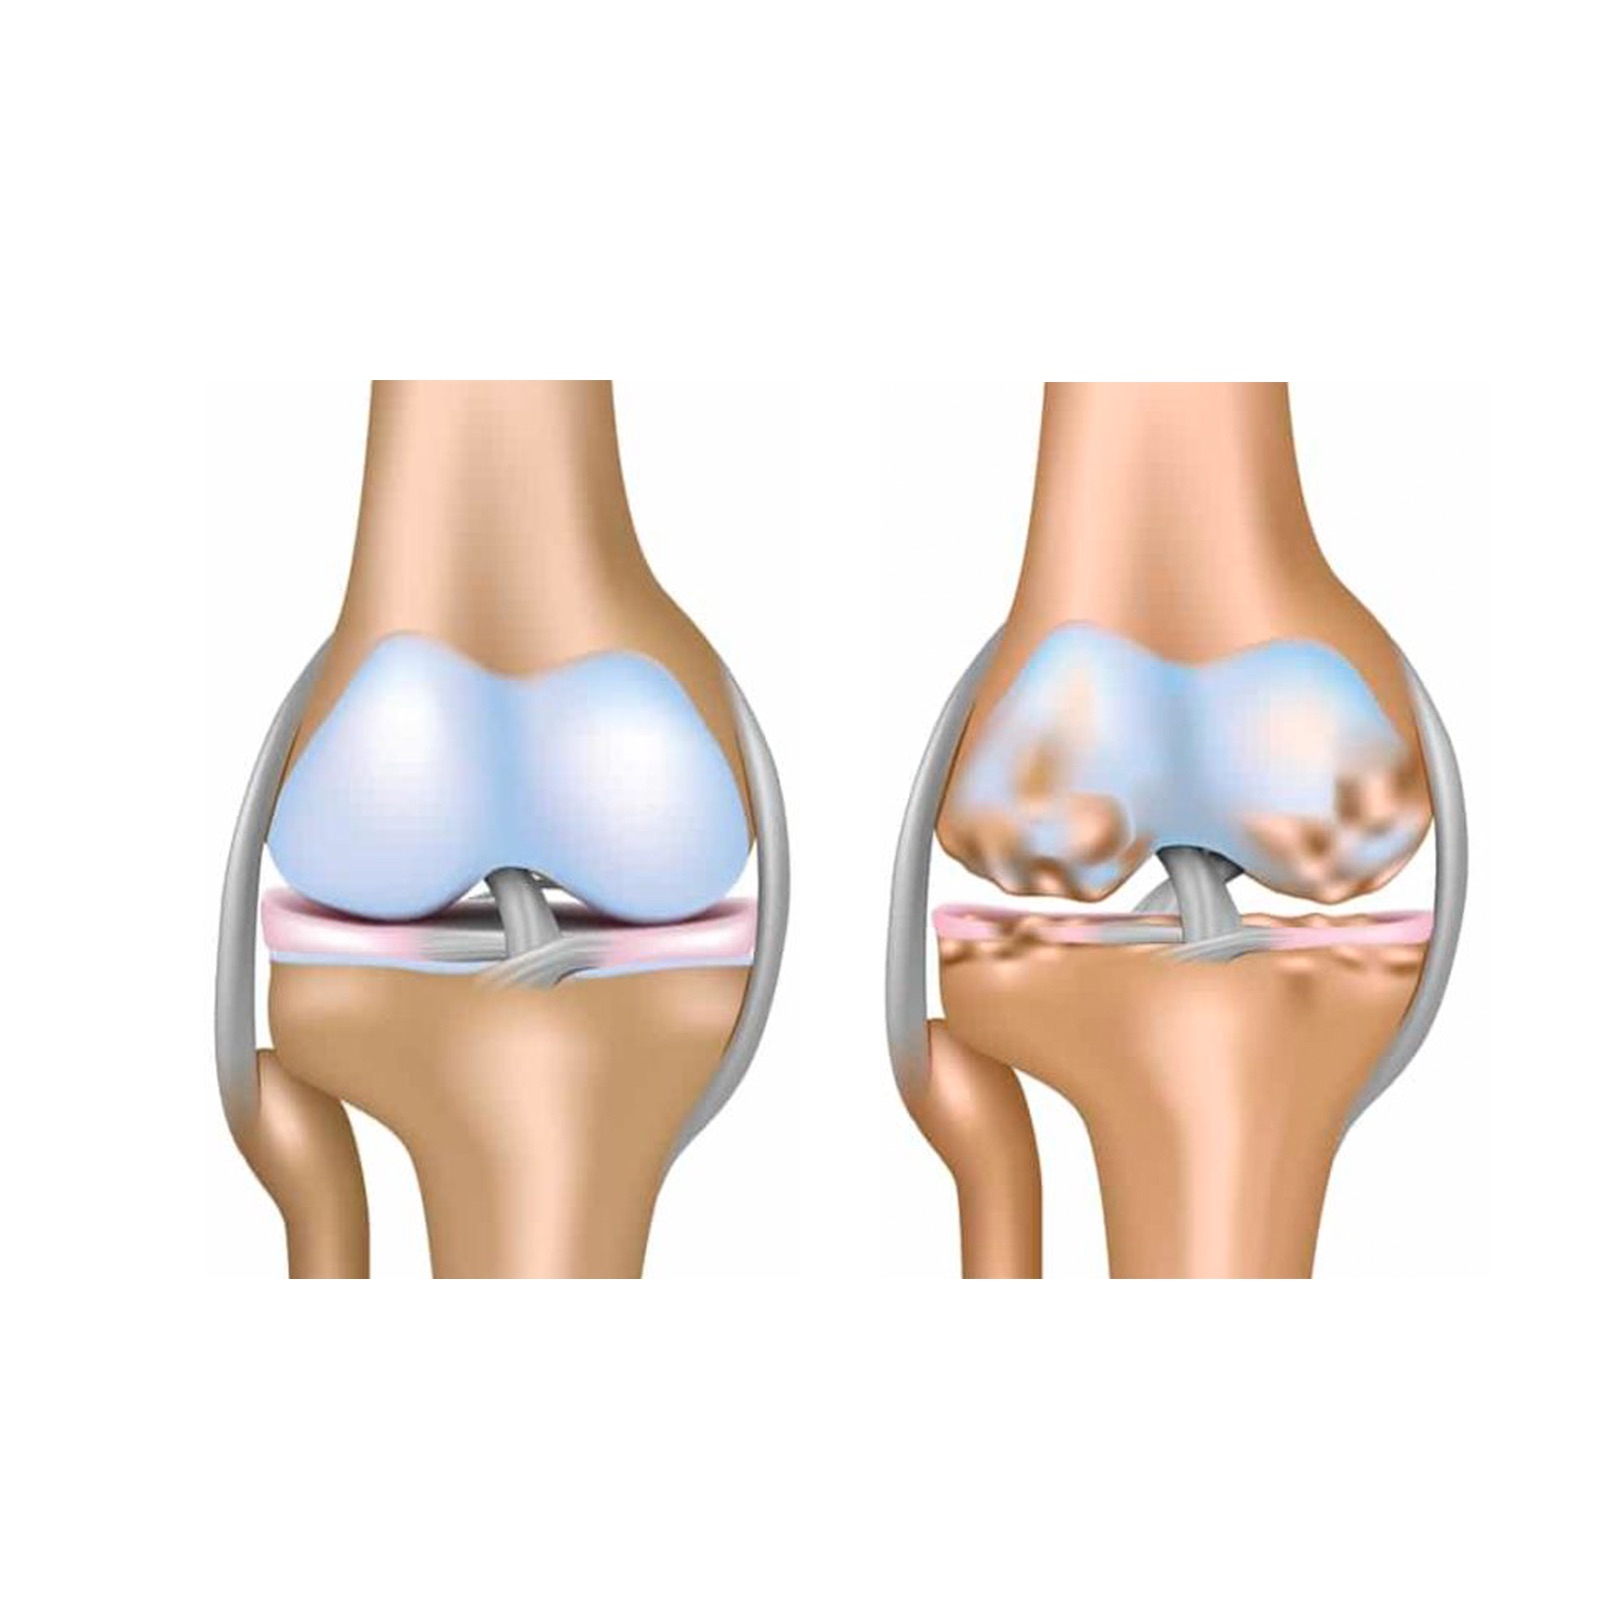 Остеопороз коленного сустава